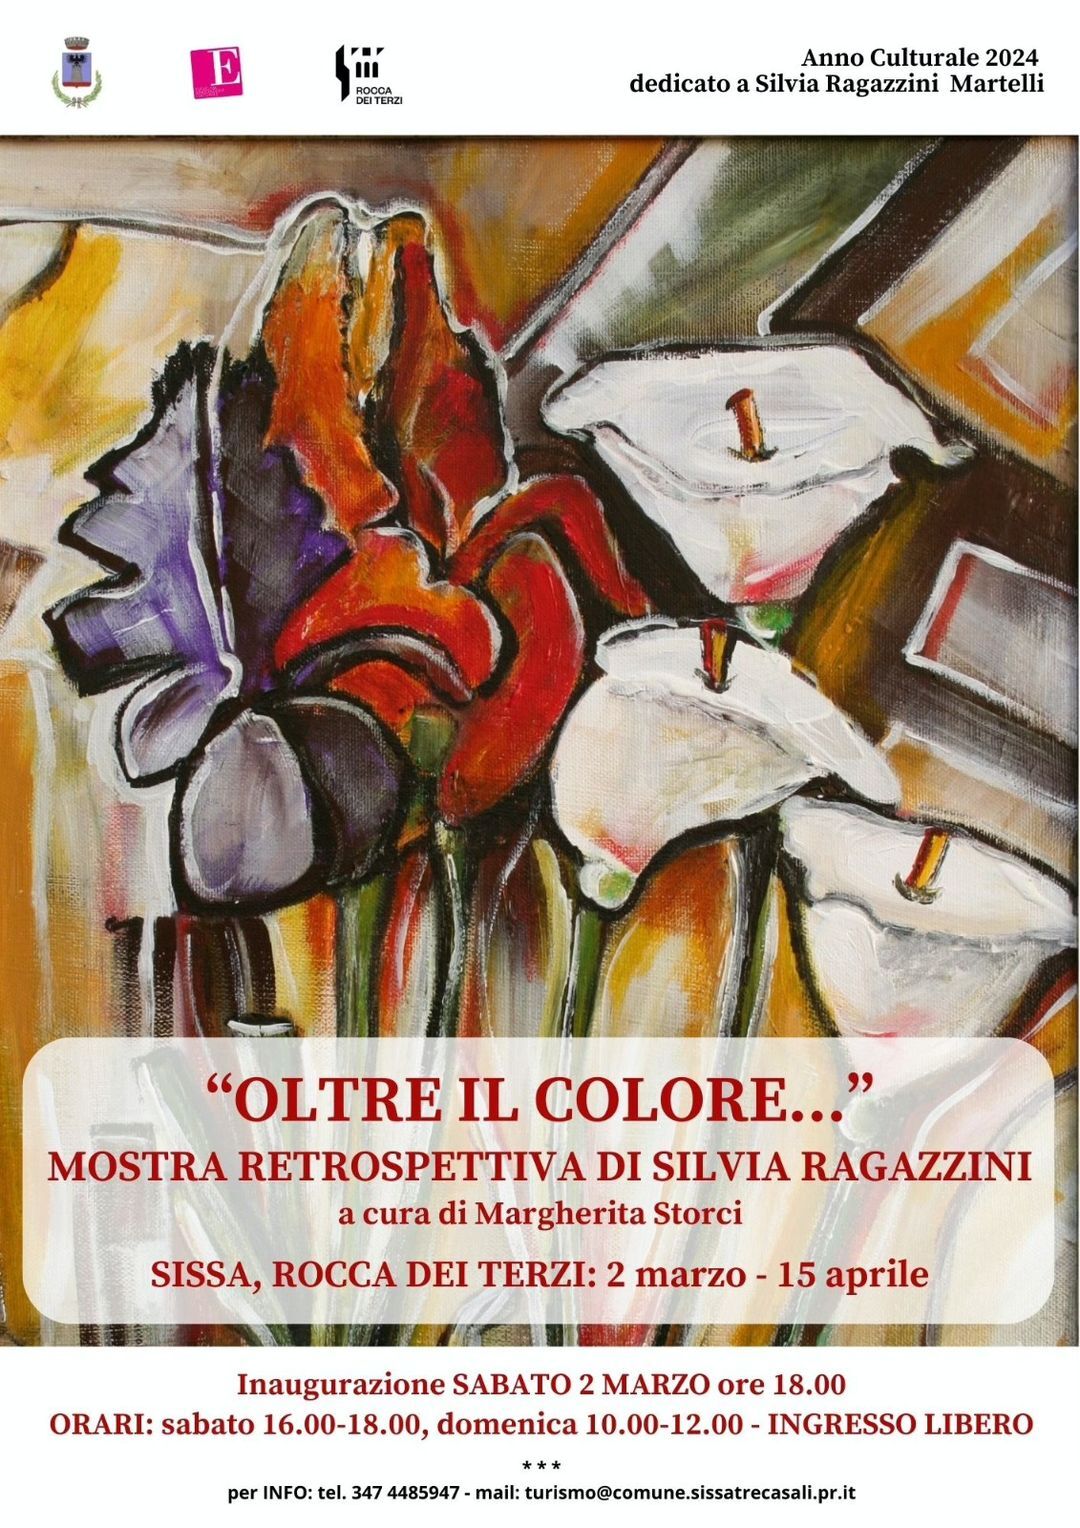 "Oltre il colore..." mostra retrospettiva in memoria di Silvia Ragazzini Martelli nella Rocca di Sissa